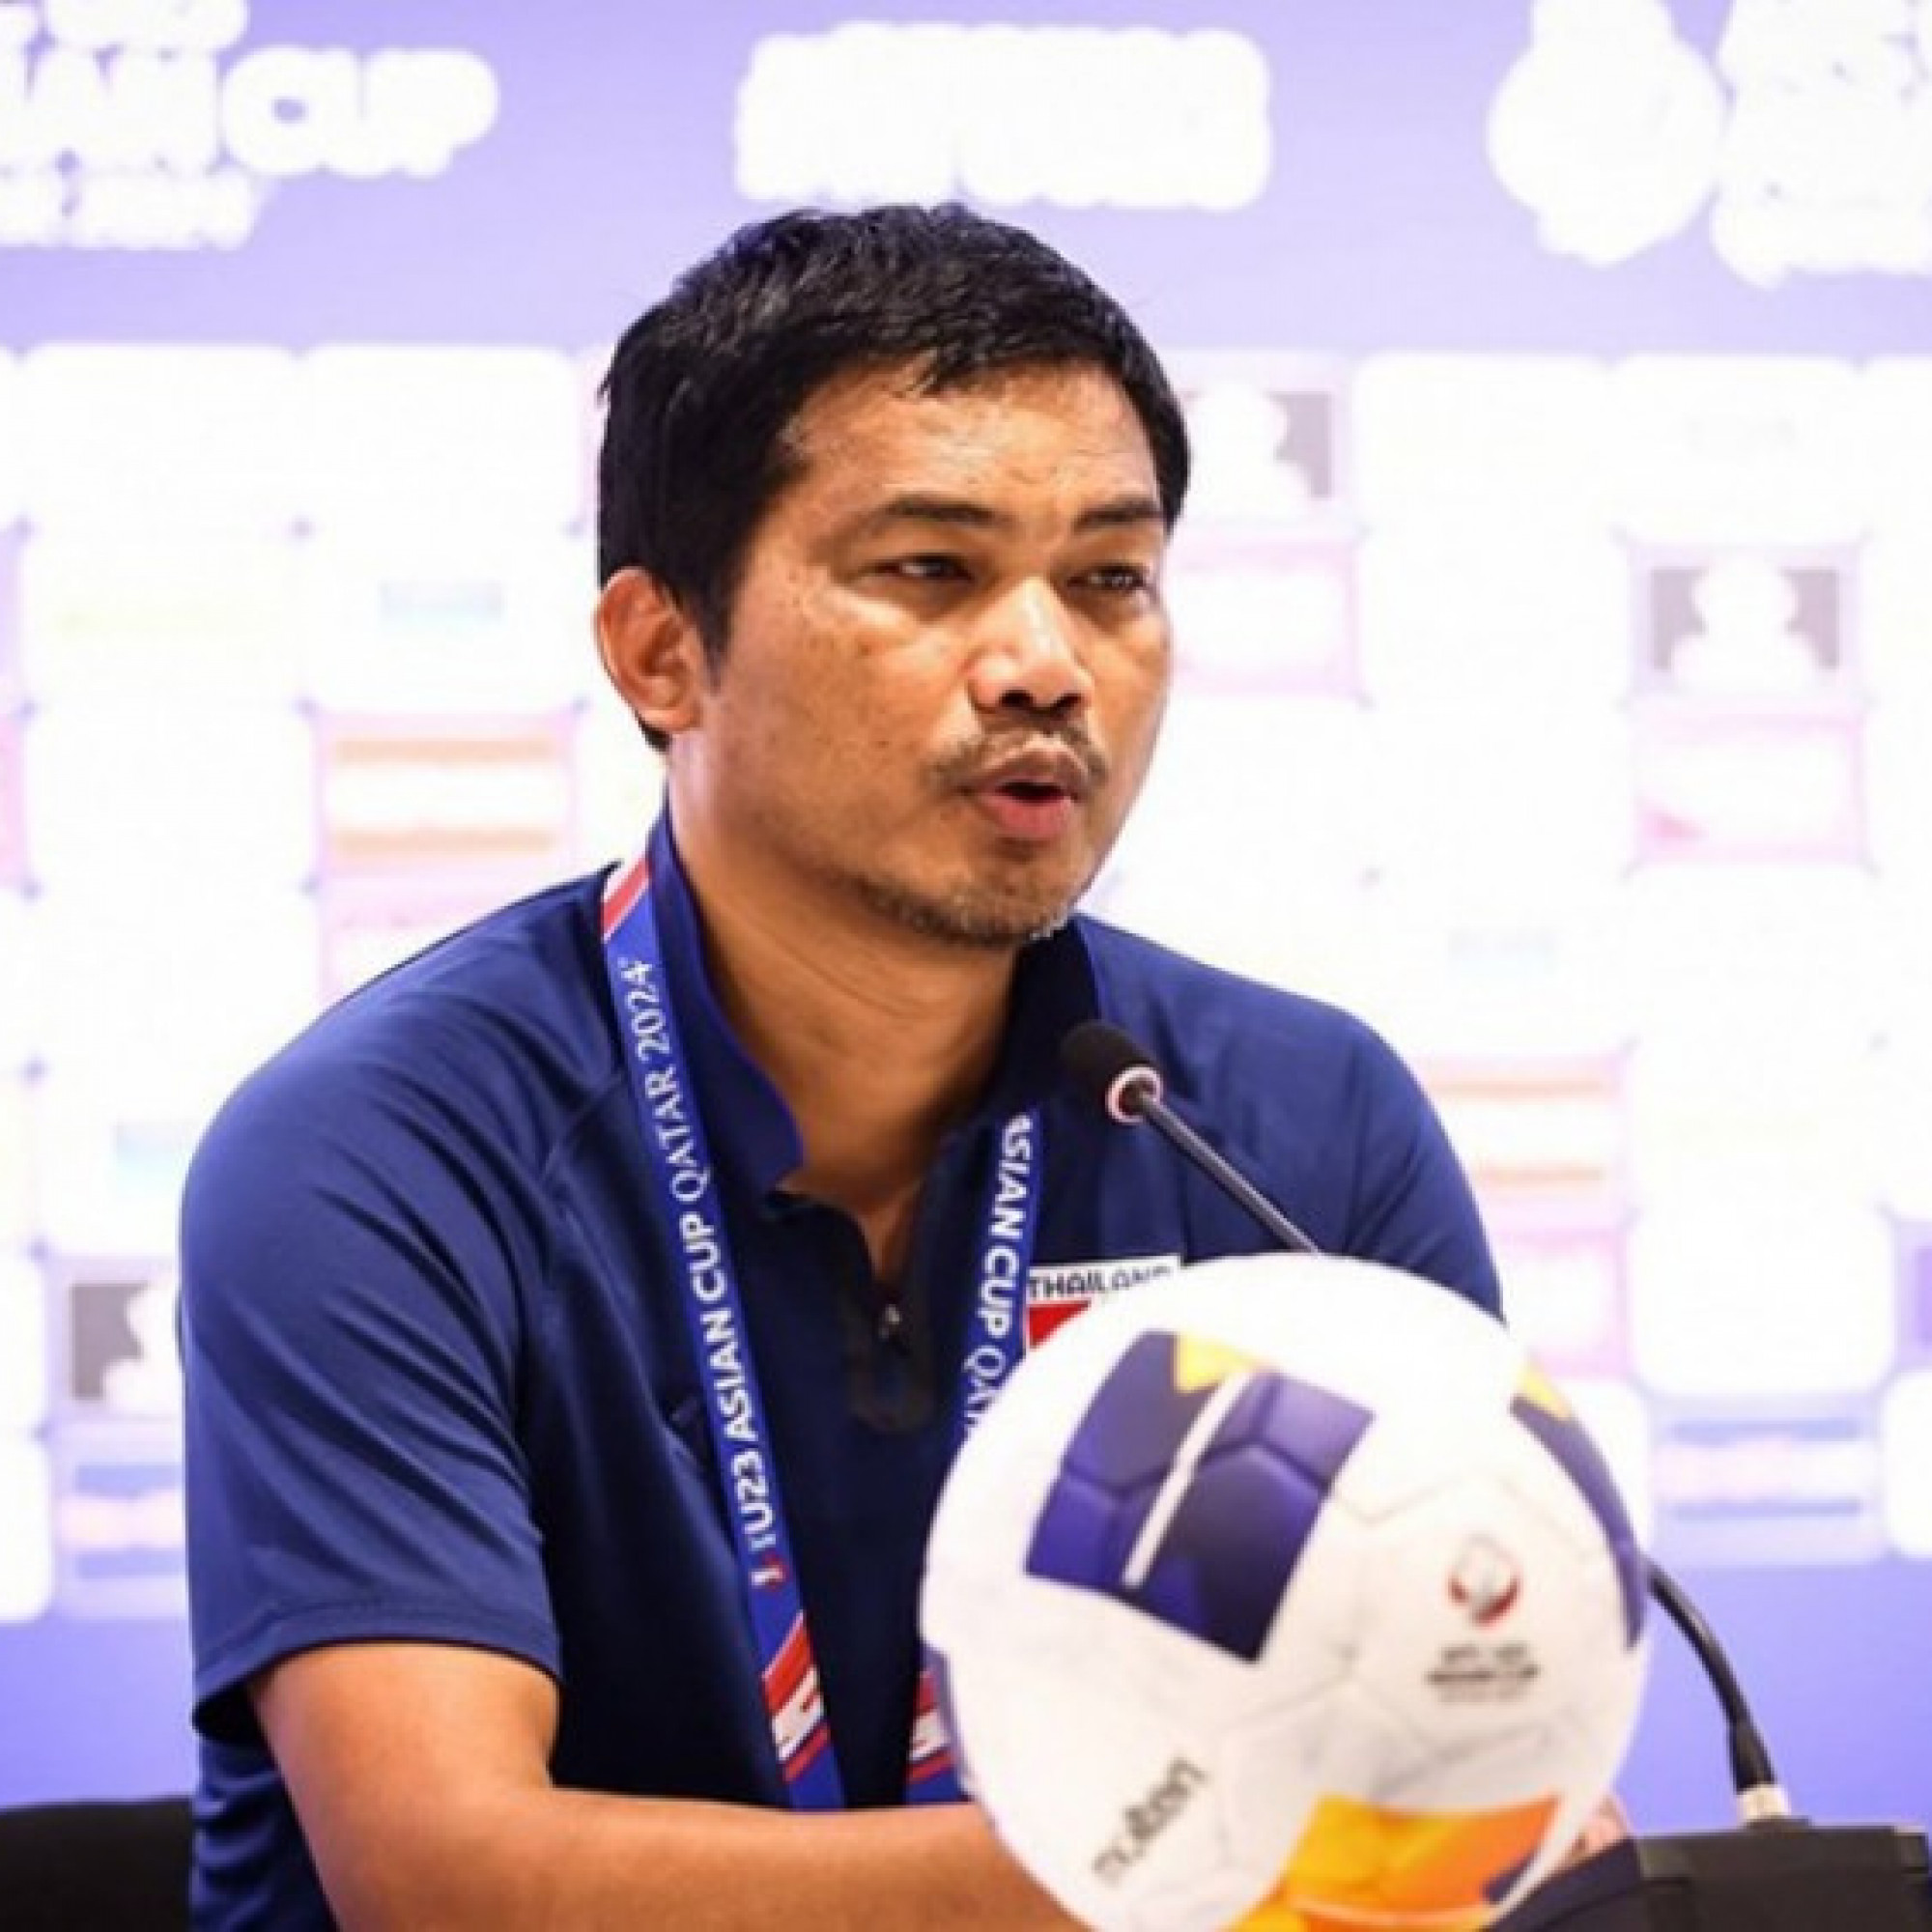  - HLV U23 Thái Lan nói lý do đội nhà thua bẽ bàng, báo chí xứ Chùa Vàng cạn lời